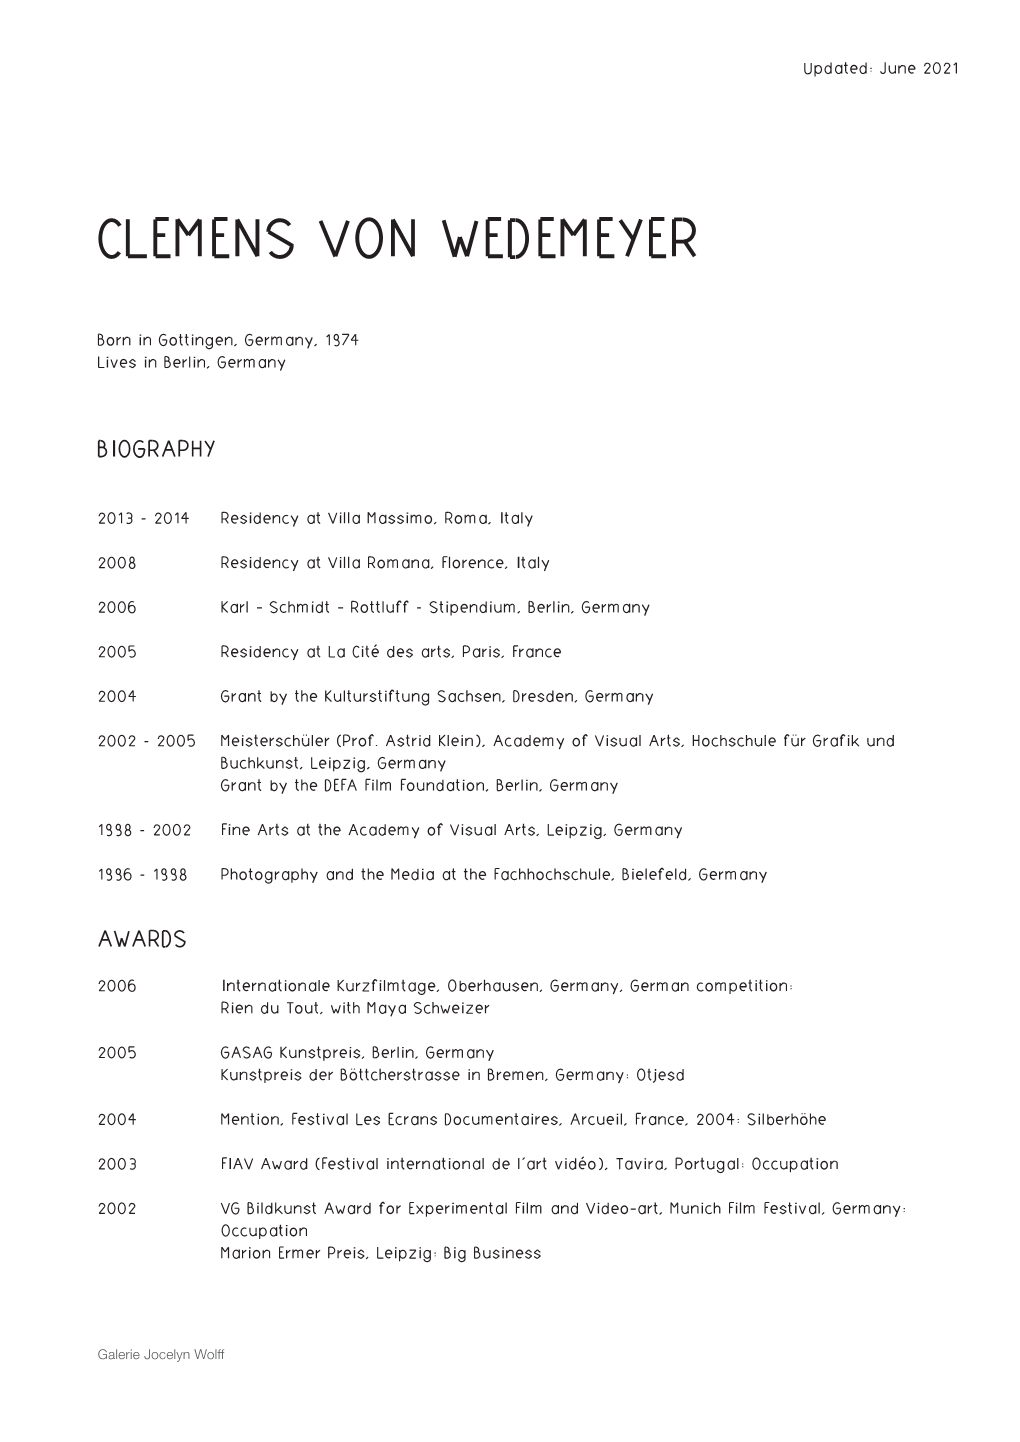 Clemens Von Wedemeyer